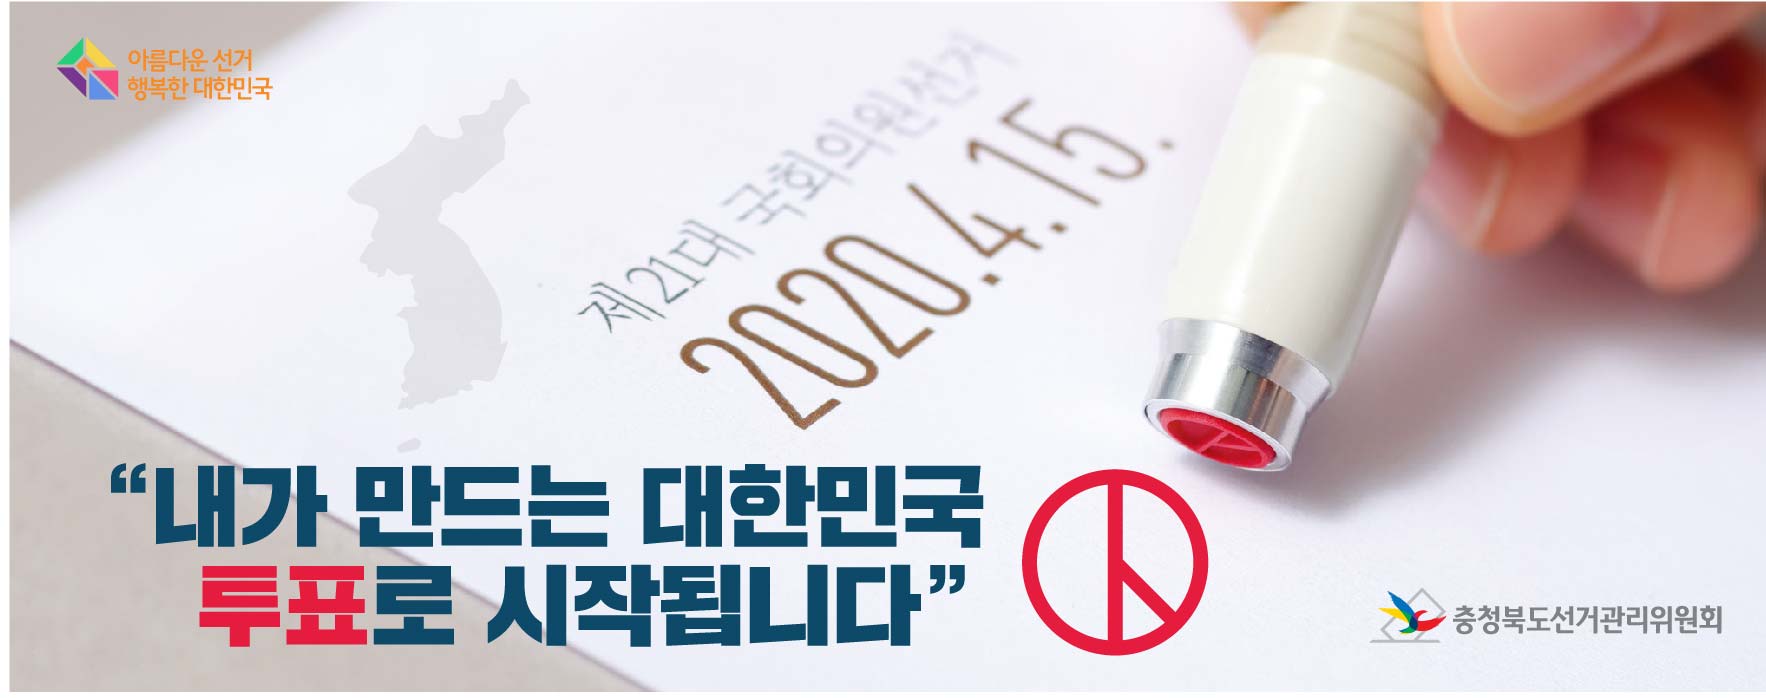 제21대 국회의원선거 홍보()1